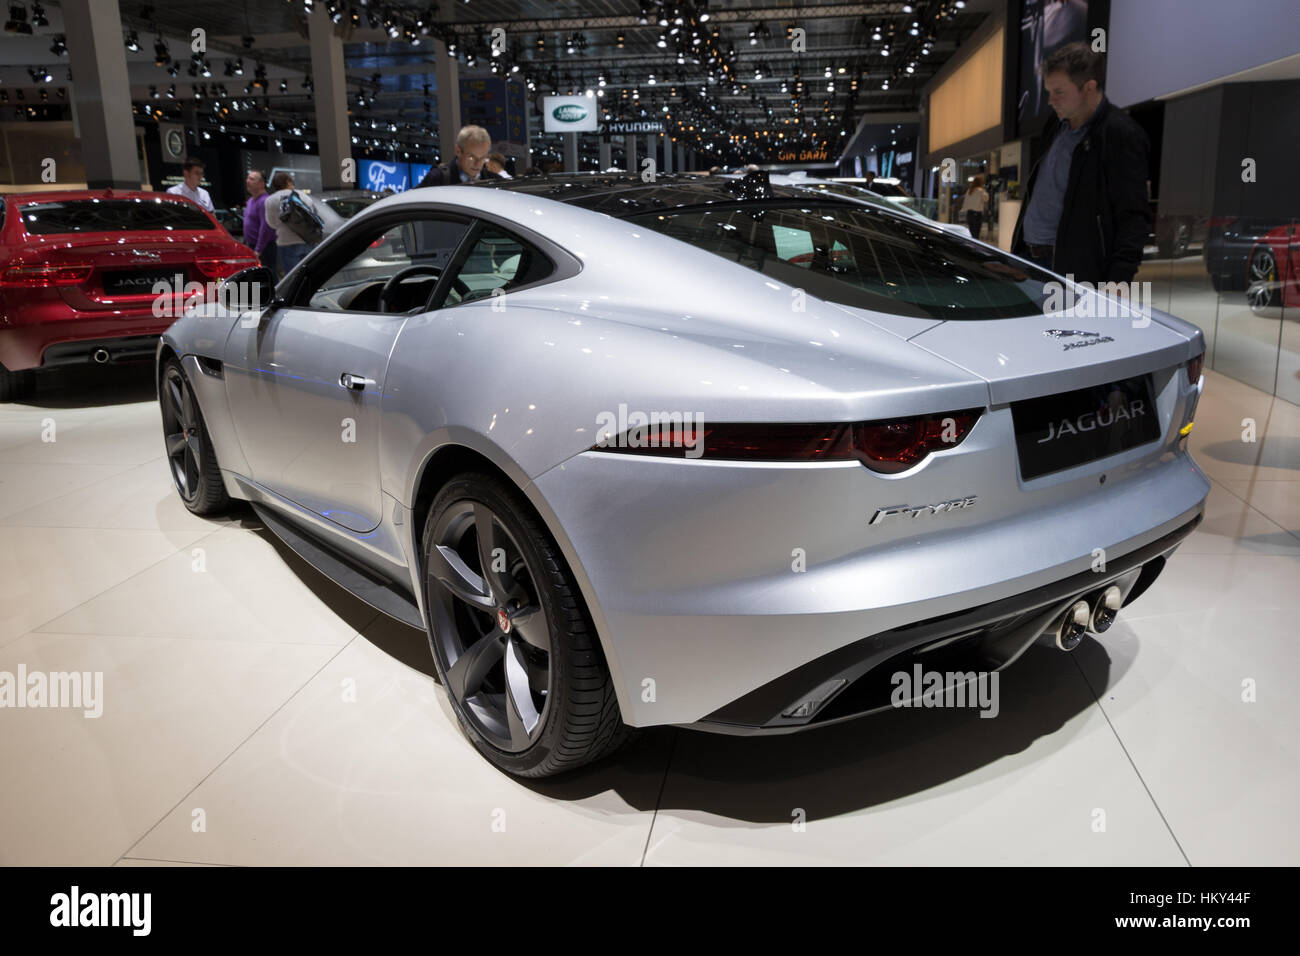 Brüssel - 19. Januar 2017: Jaguar F-Type auf dem Display an der Motor Show in Brüssel. Stockfoto